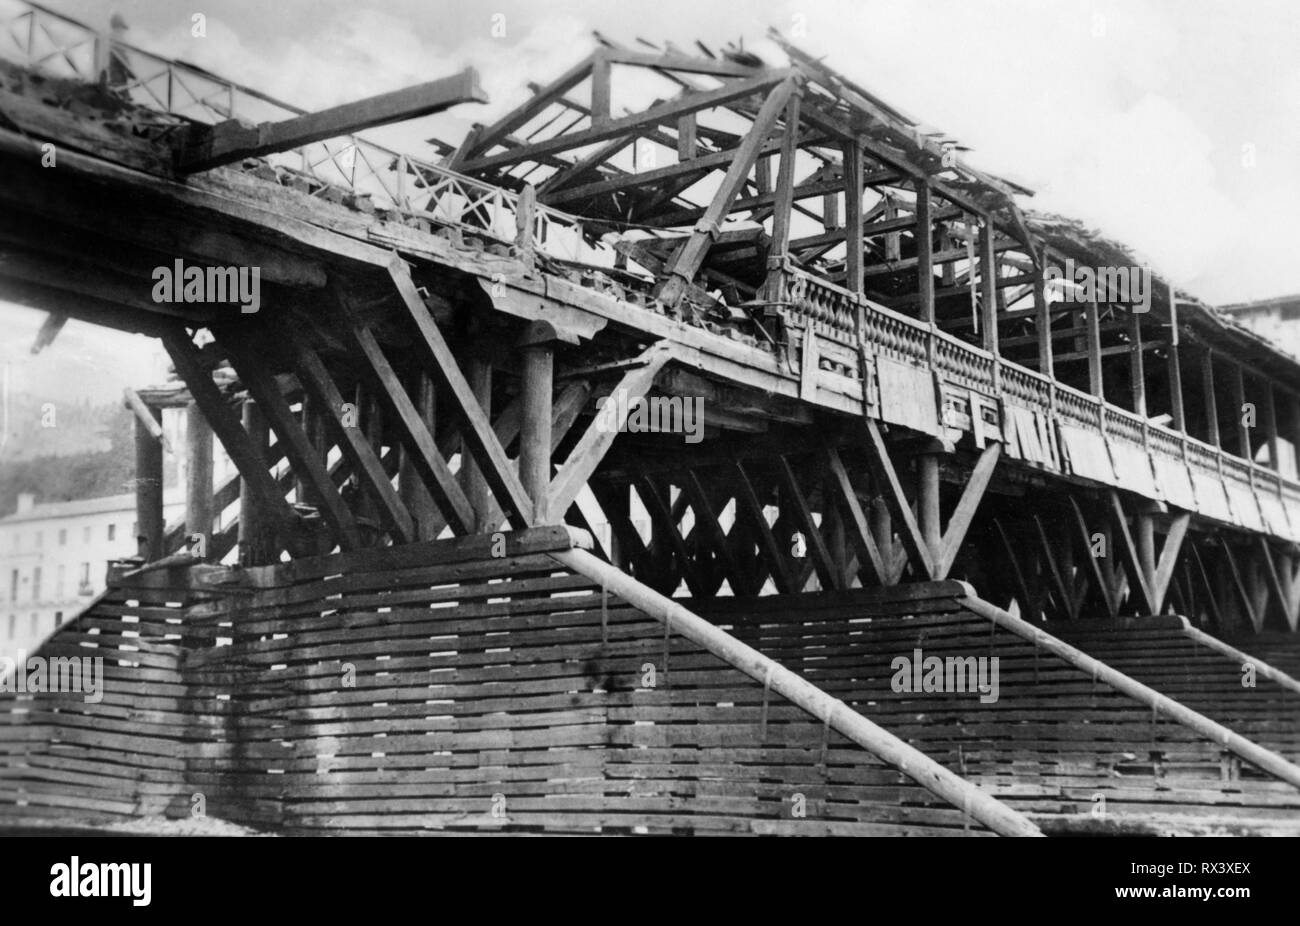 Italia, Veneto, el antiguo puente de Bassano del grappa, después de la guerra, 1945-50 Foto de stock